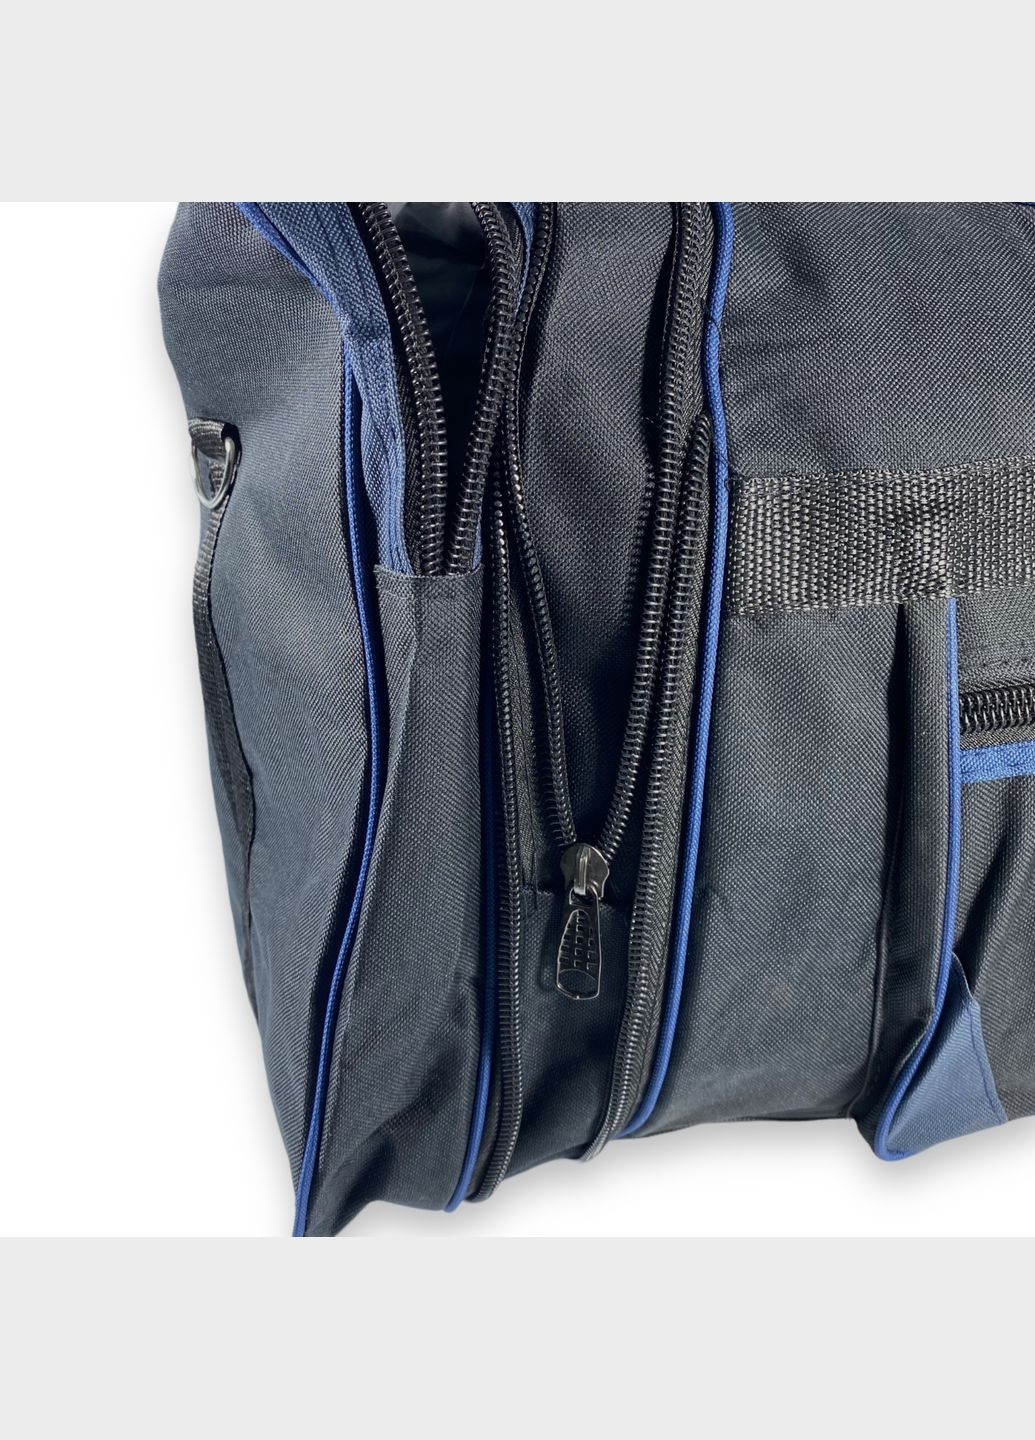 Дорожня сумка з розширенням 1 відділення 2 бокові кишені розмір: 70(80)*35*27 см чорносиня Sport (266911578)